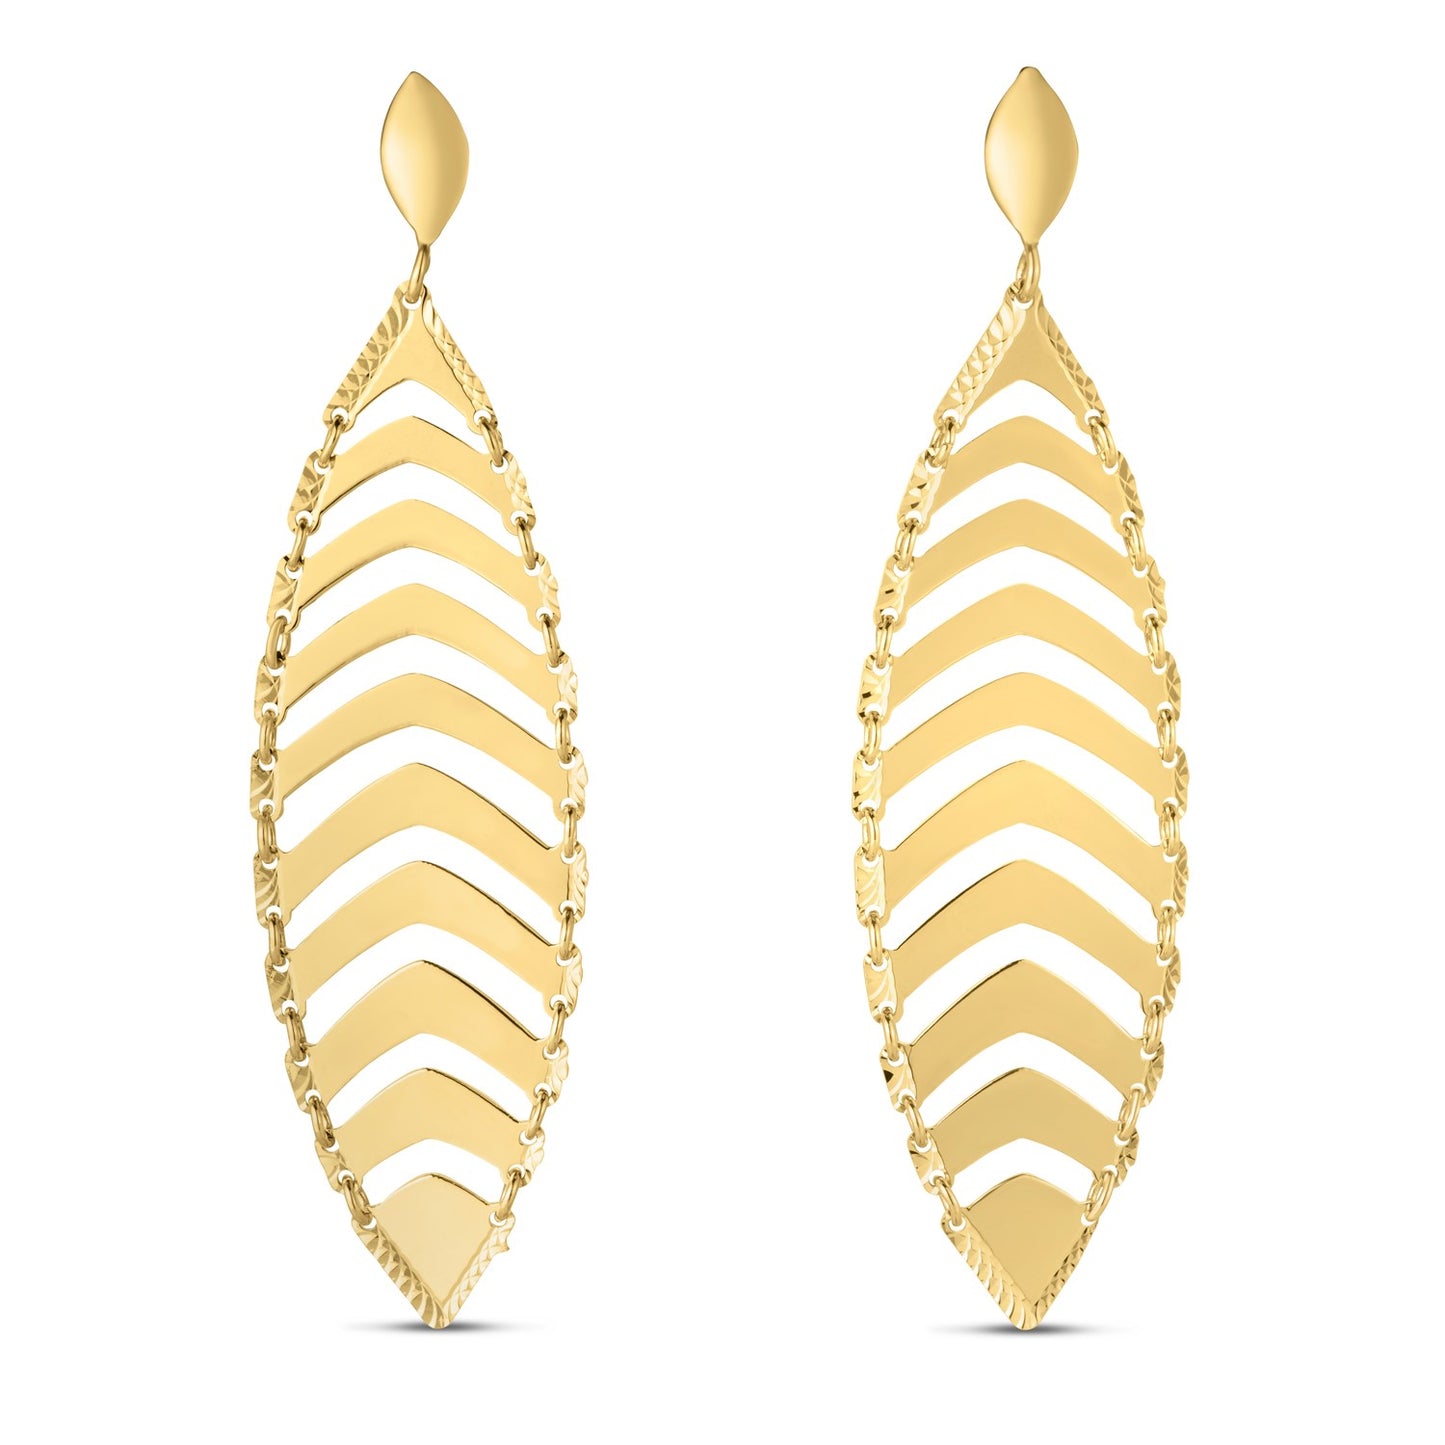 14k Yellow Gold Drop Leaf Earrings